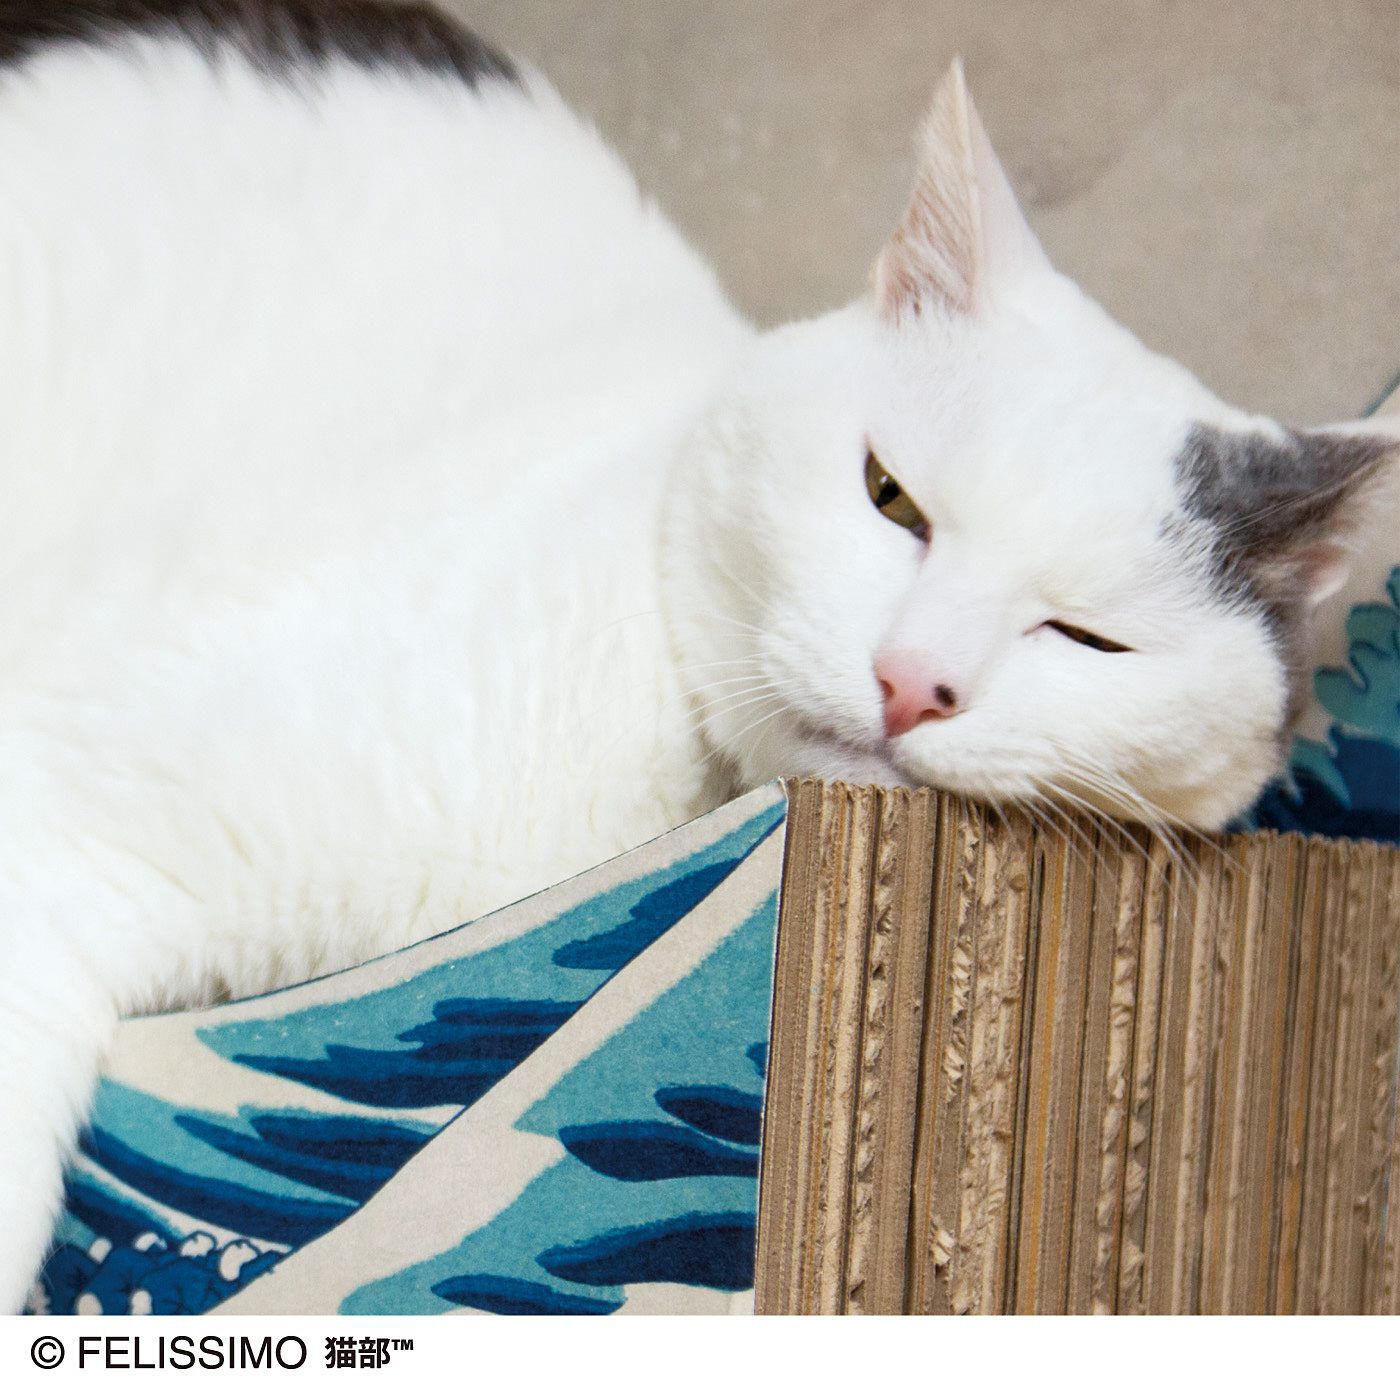 猫部|猫部×ミュージアム部　名画をたしなむ猫のつめとぎ〈葛飾北斎 神奈川沖浪裏〉|波が盛り上がった部分が、ちょうどあごにフィットするサイズ設計。